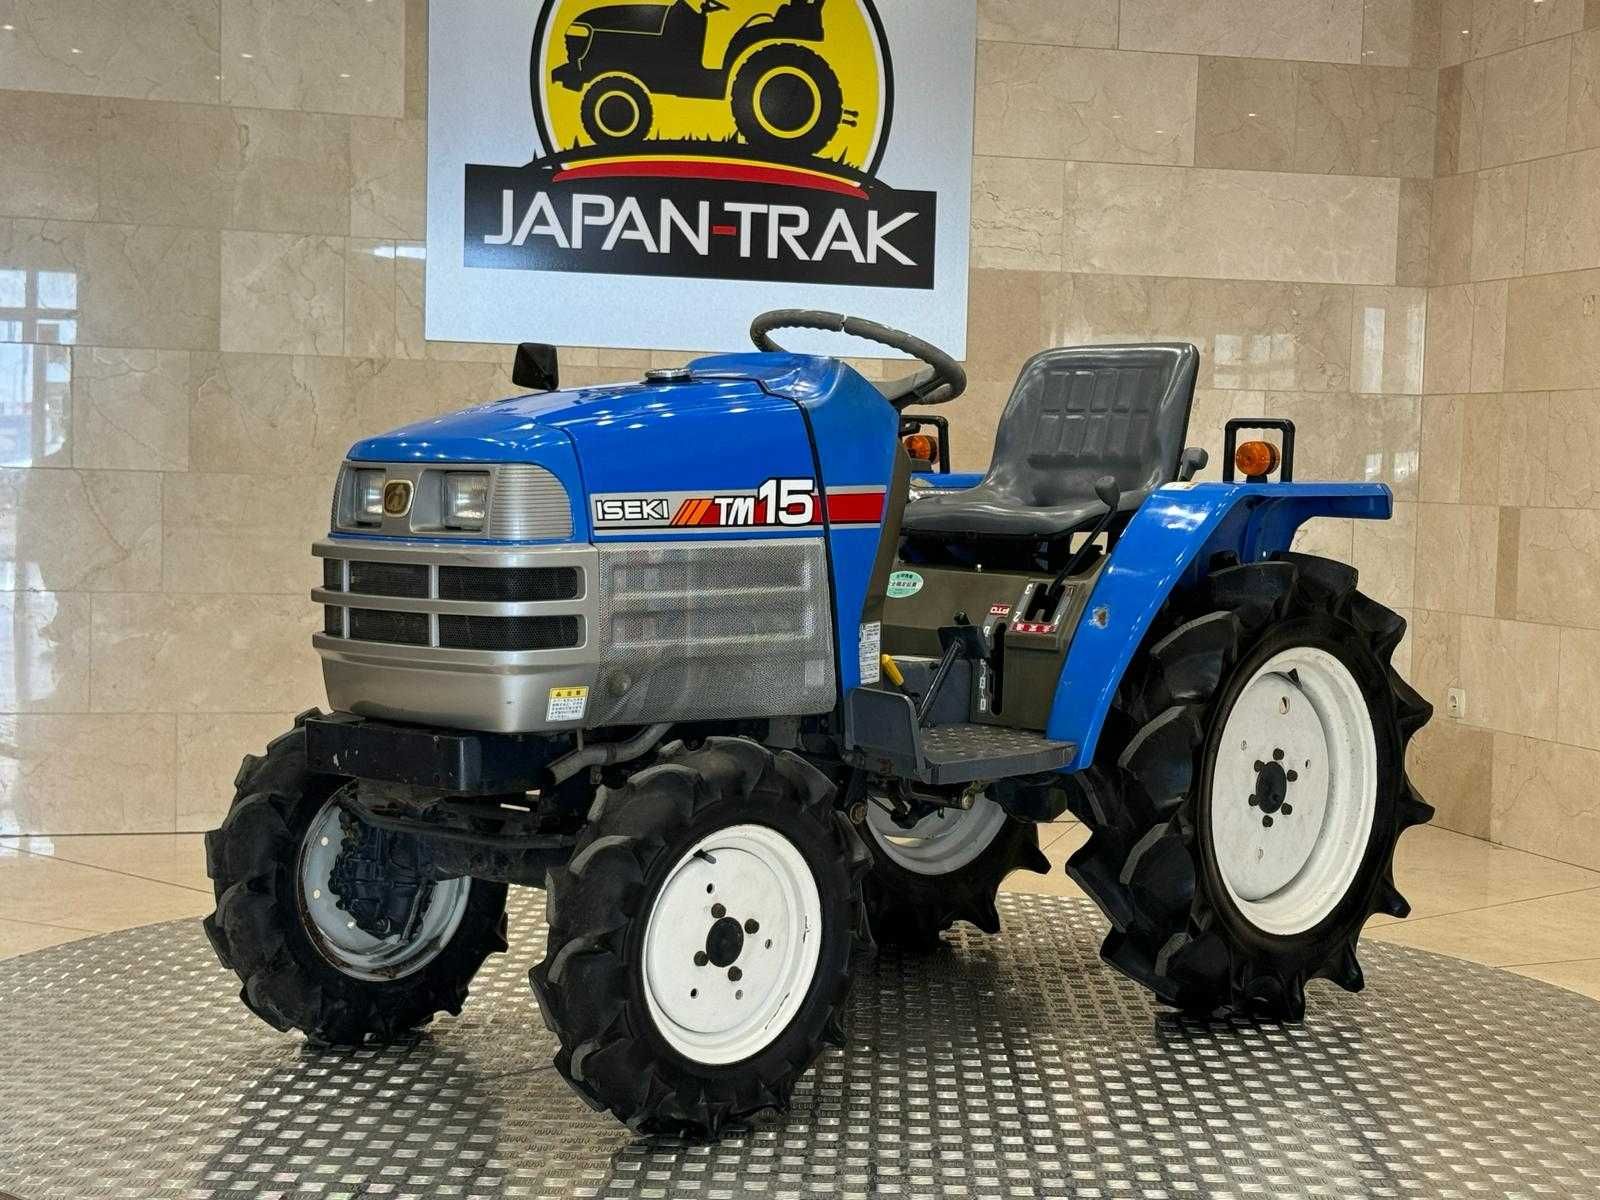 Iseki TM-15,Gwarancja traktorek ogrodowy,ciągniczek. Napęd 4x4